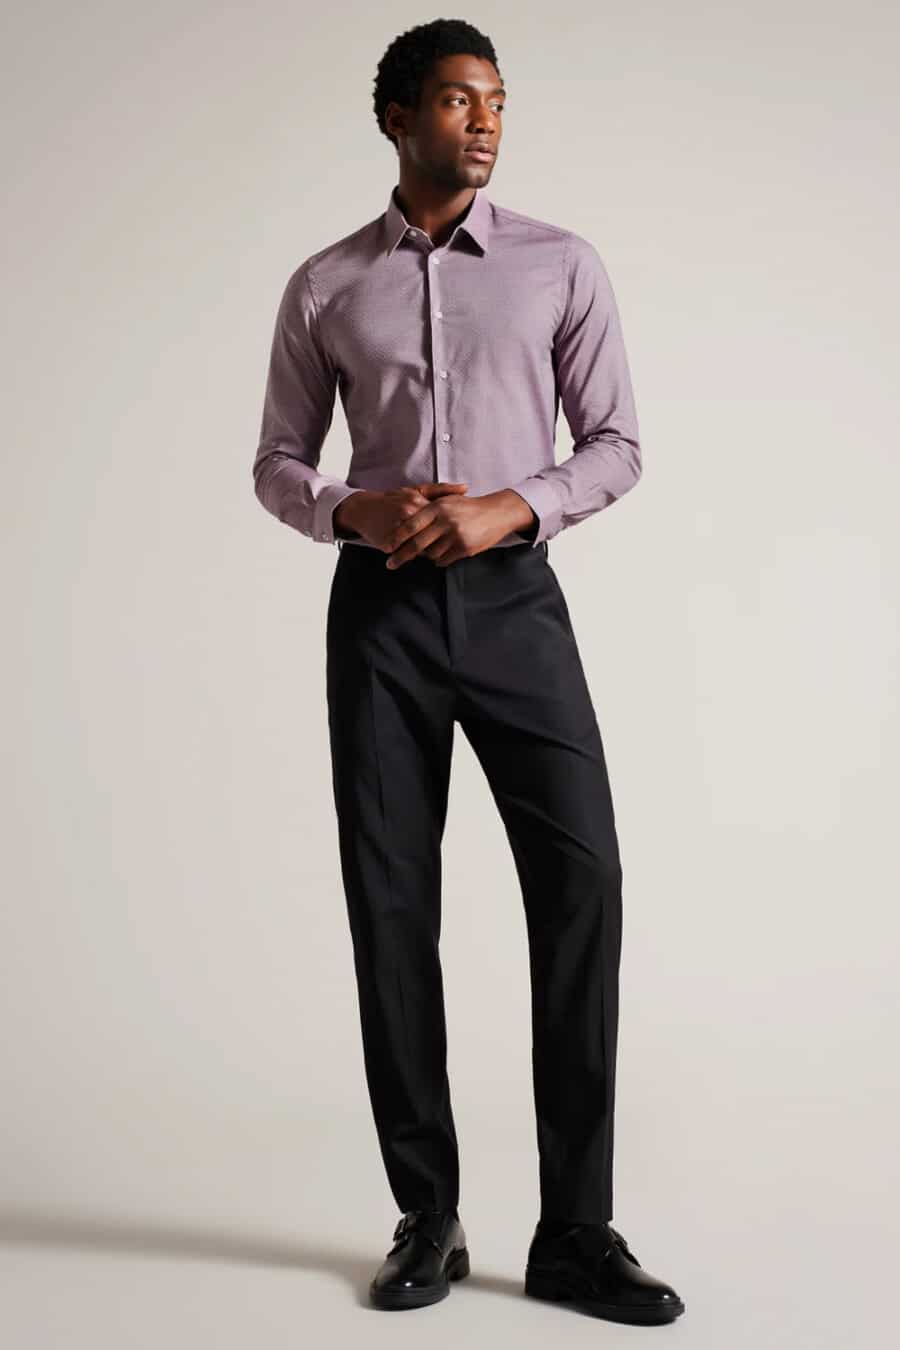 Men's black suit pants, purple dress shirt and black leather Derby shoes outfit